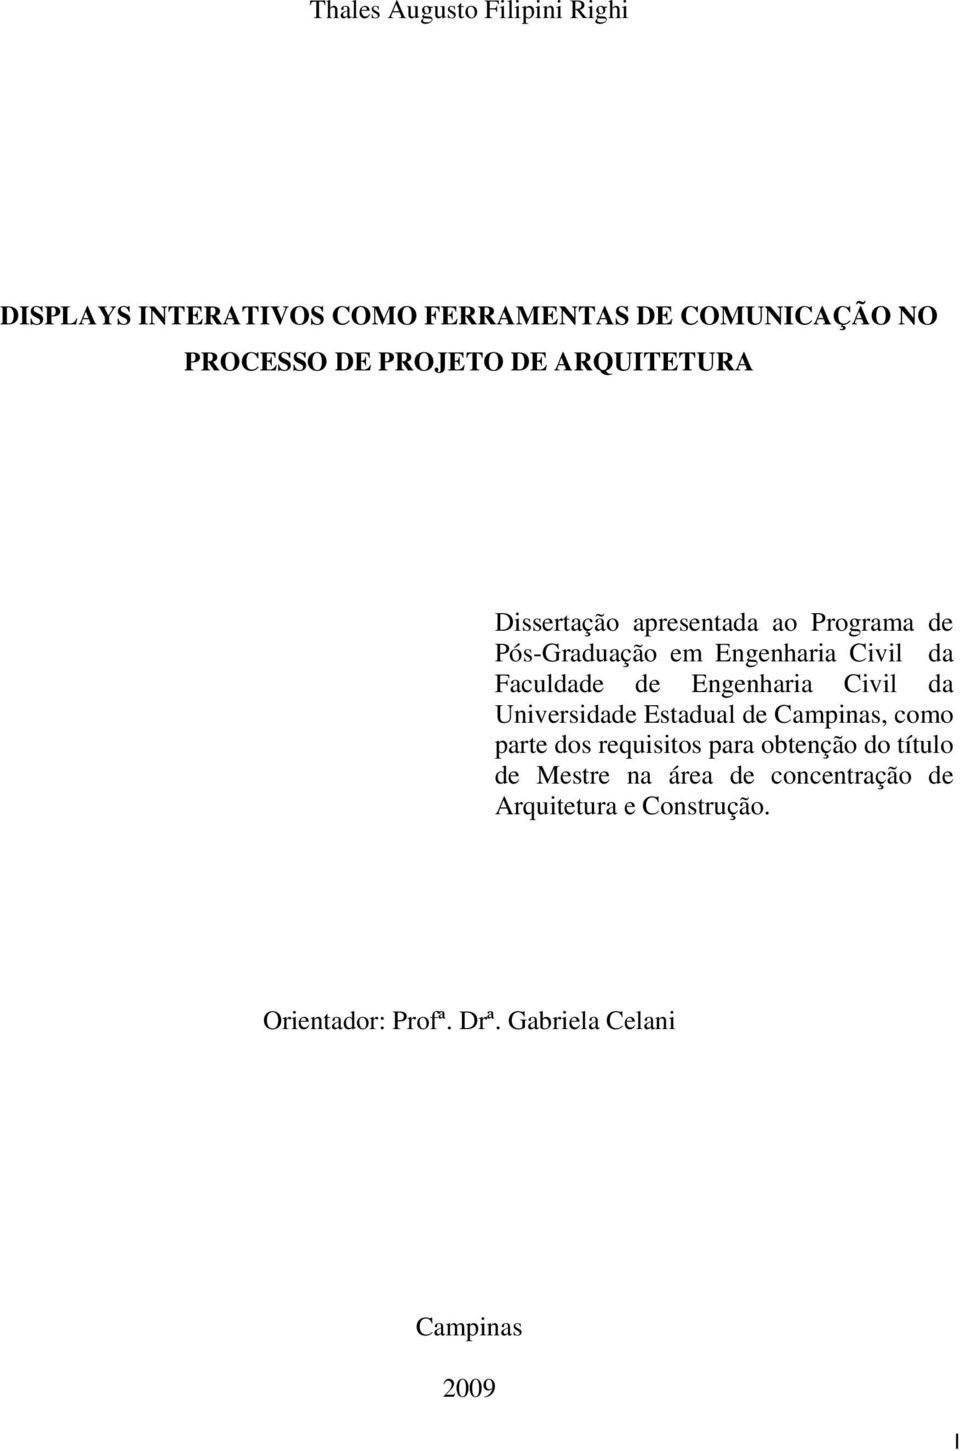 Engenharia Civil da Universidade Estadual de Campinas, como parte dos requisitos para obtenção do título de